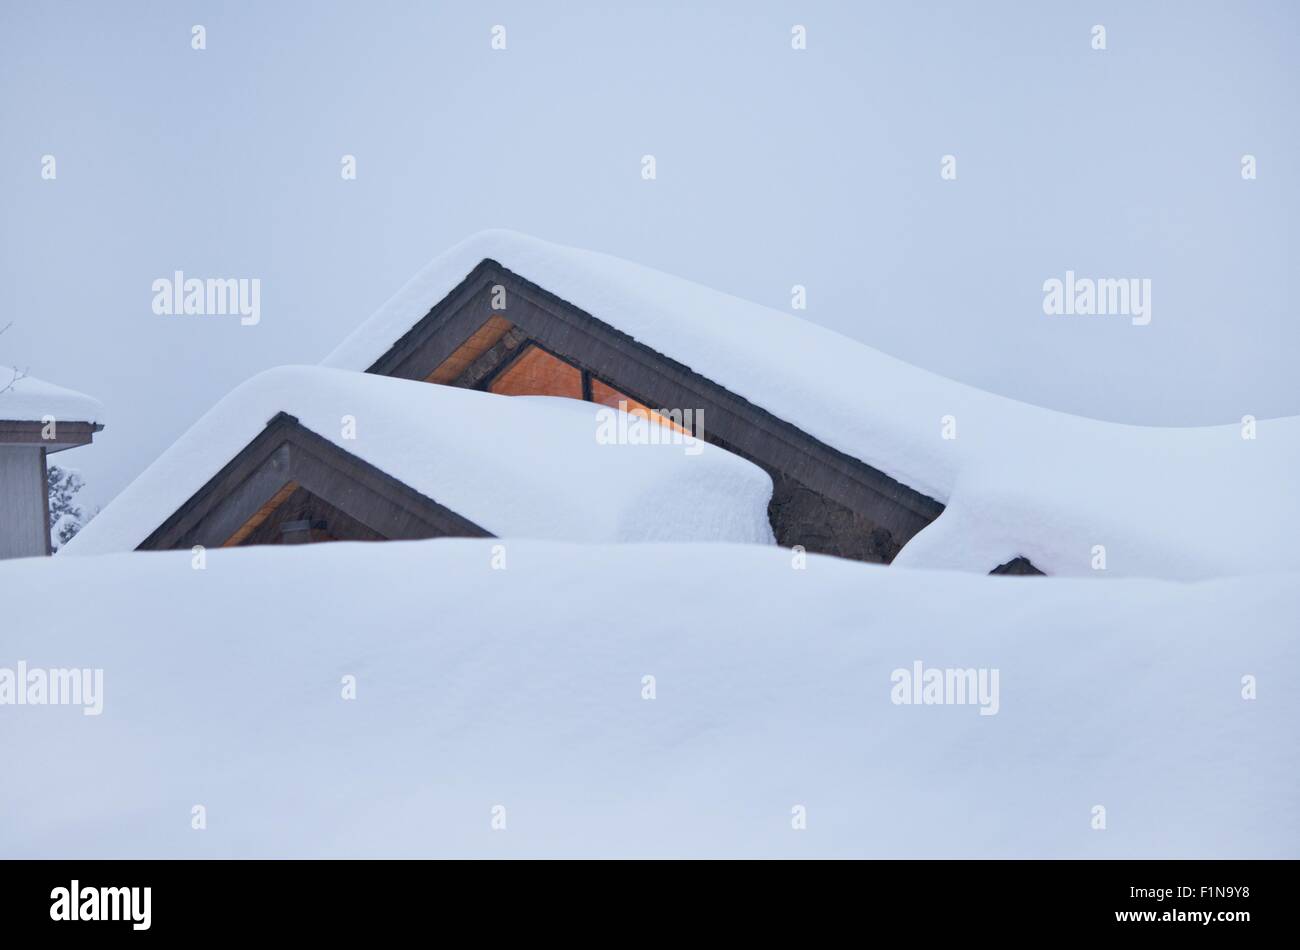 Le poids de la neige et de la glace sur le toit d'accumulation dans le Colorado. Accueil Libre. Banque D'Images